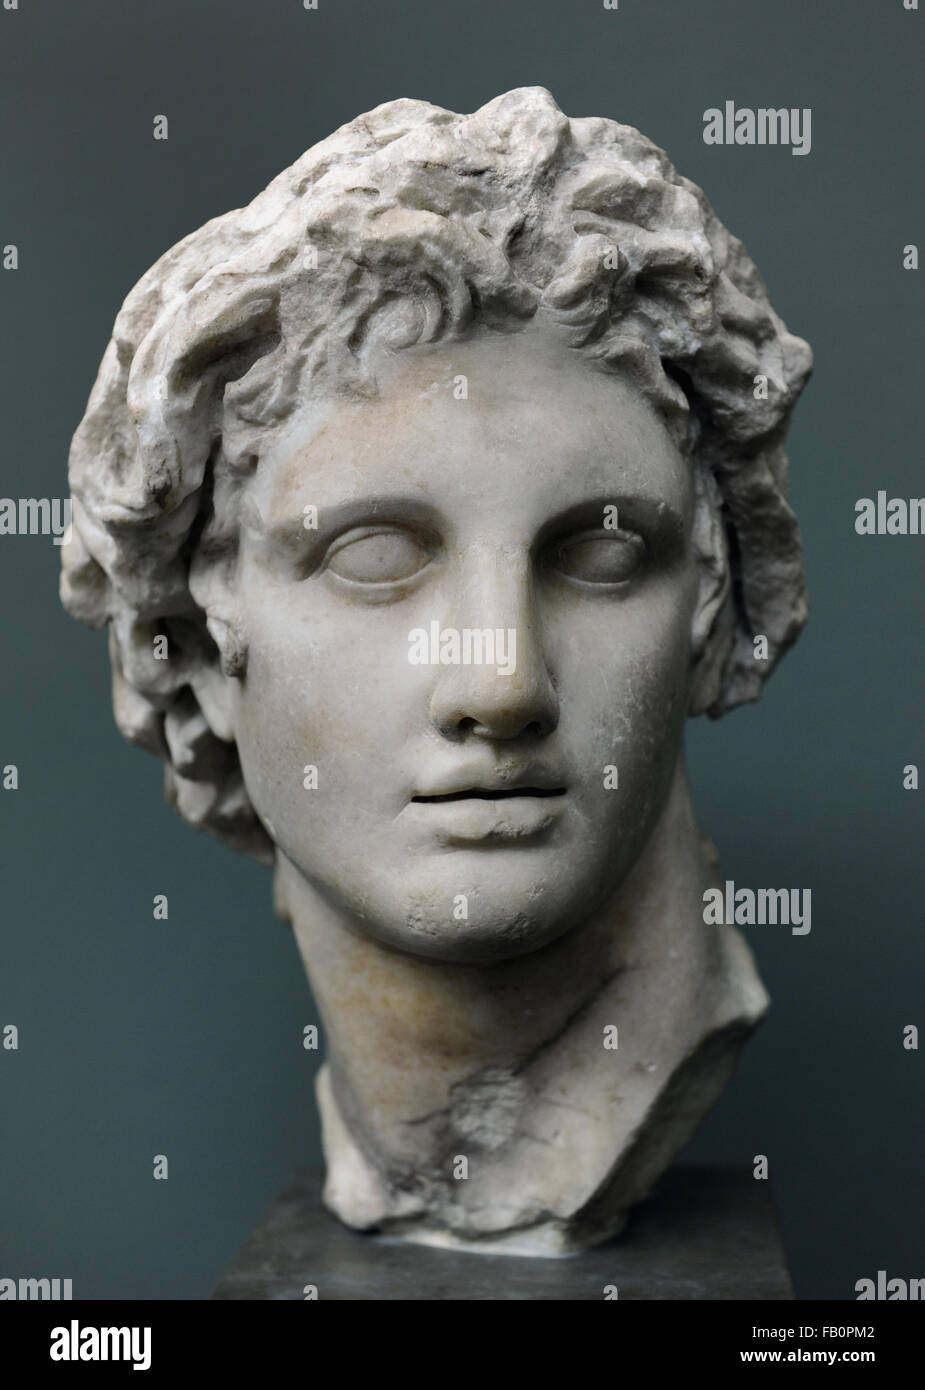 Alexander der große (356-323 v. Chr.). König von Makedonien. Porträt. Marmor, aus Alexandria, NY Carlsberg Glyptotek, Copenhagen. Stockfoto